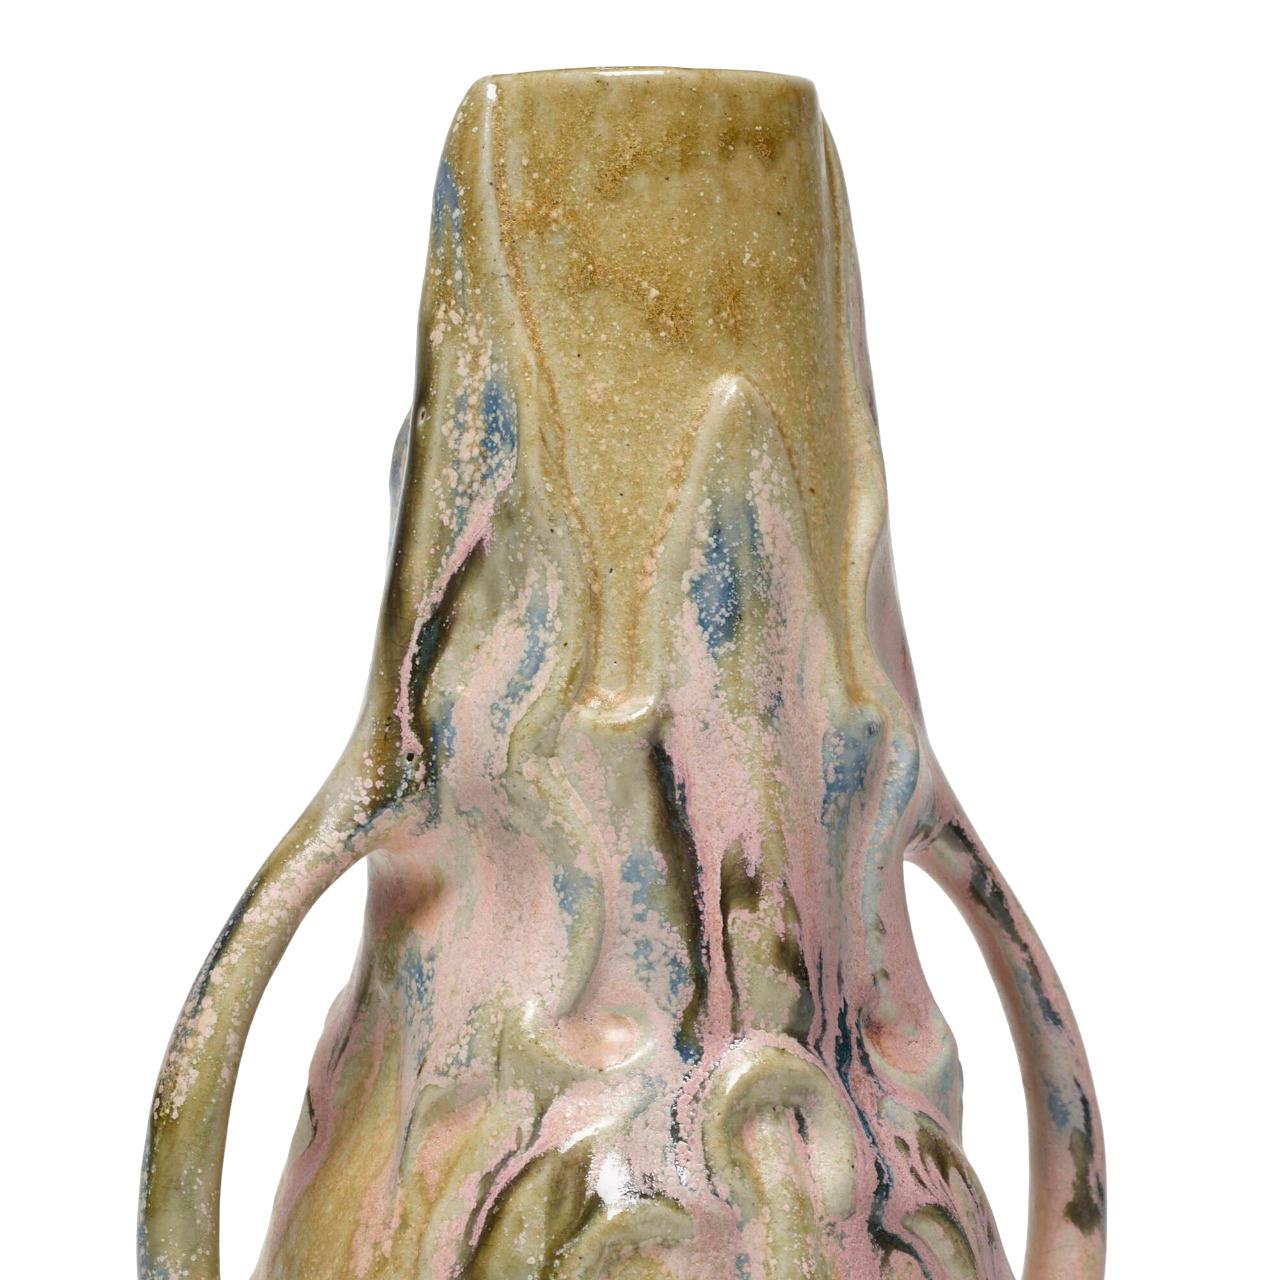 Charles Gréber (1853-1935) war ein renommierter Keramiker, der die Beauvaiser Keramik nachhaltig prägte, indem er das von seinem Vater 1870 gegründete Familienunternehmen ausbaute.
Diese elegante Vase mit zwei Henkeln ist die perfekte Ergänzung für